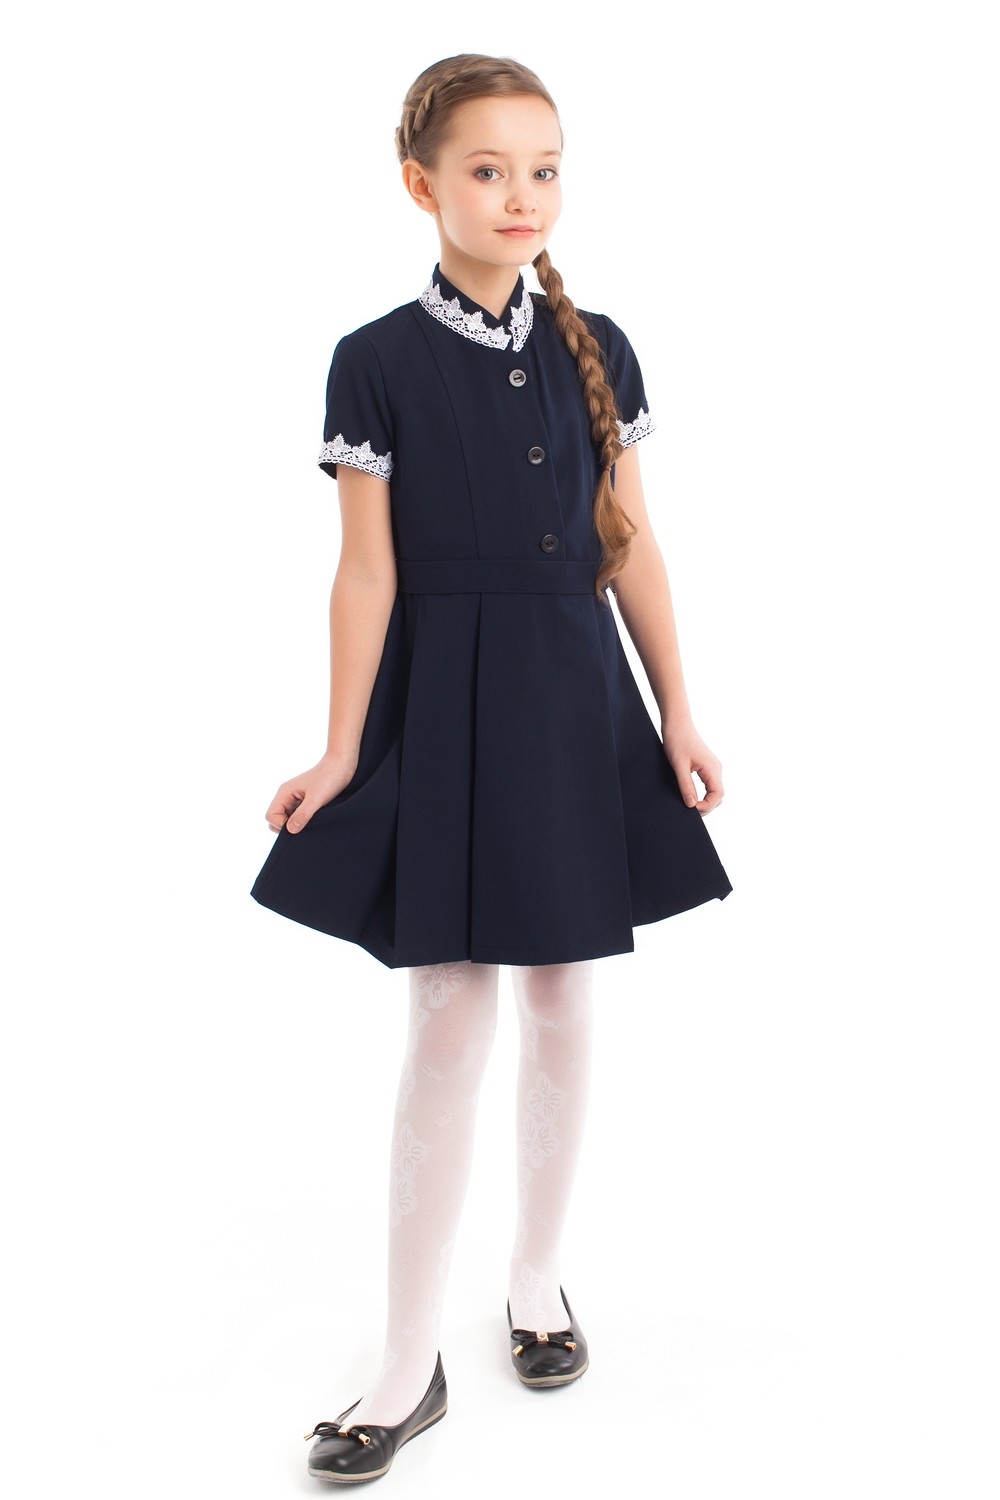 Платье школьное синее (поливискоза) начальная школа